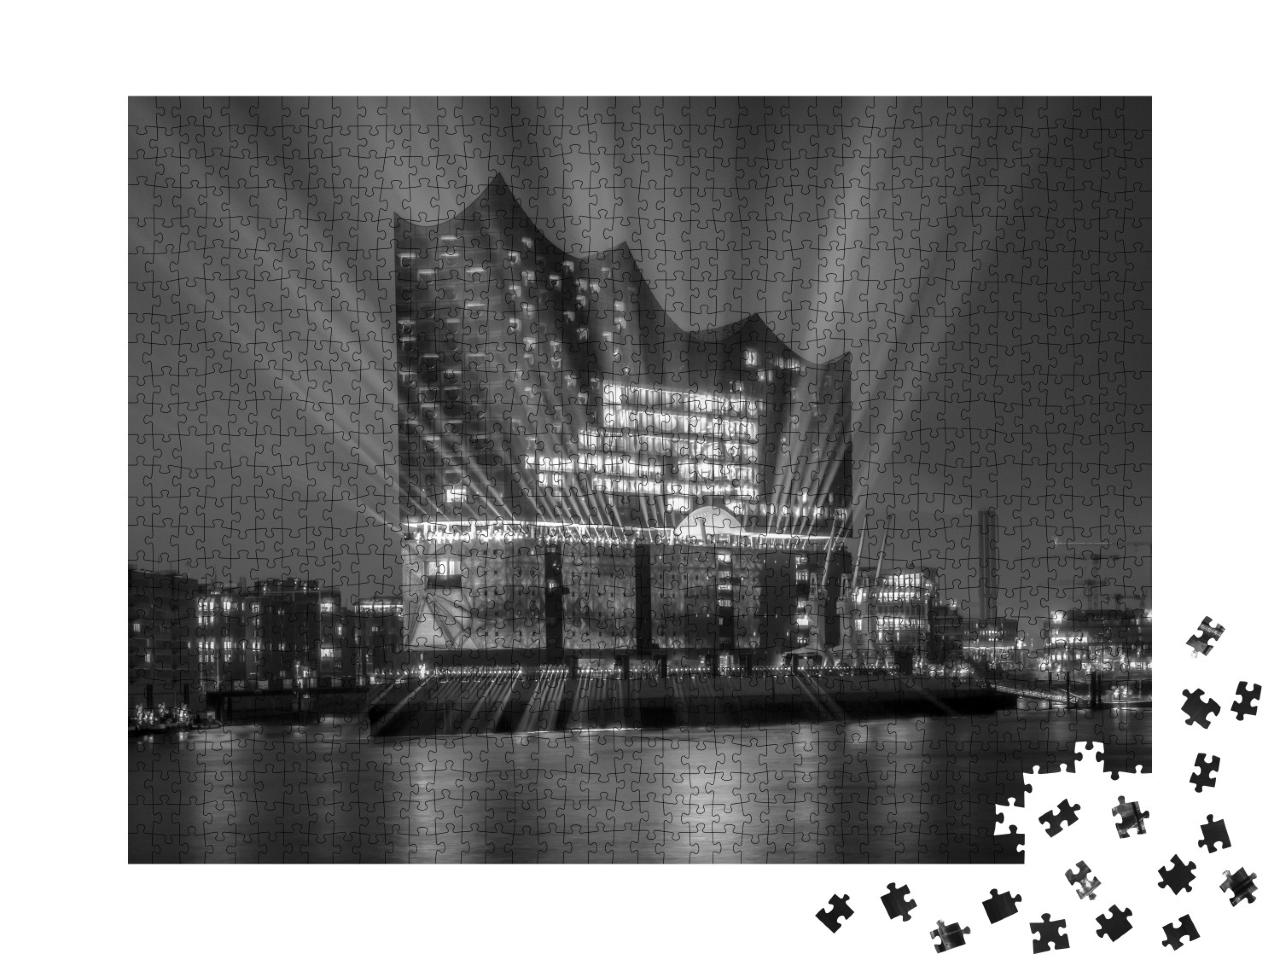 Puzzle de 1000 pièces « Panorama du port de Hambourg la nuit »